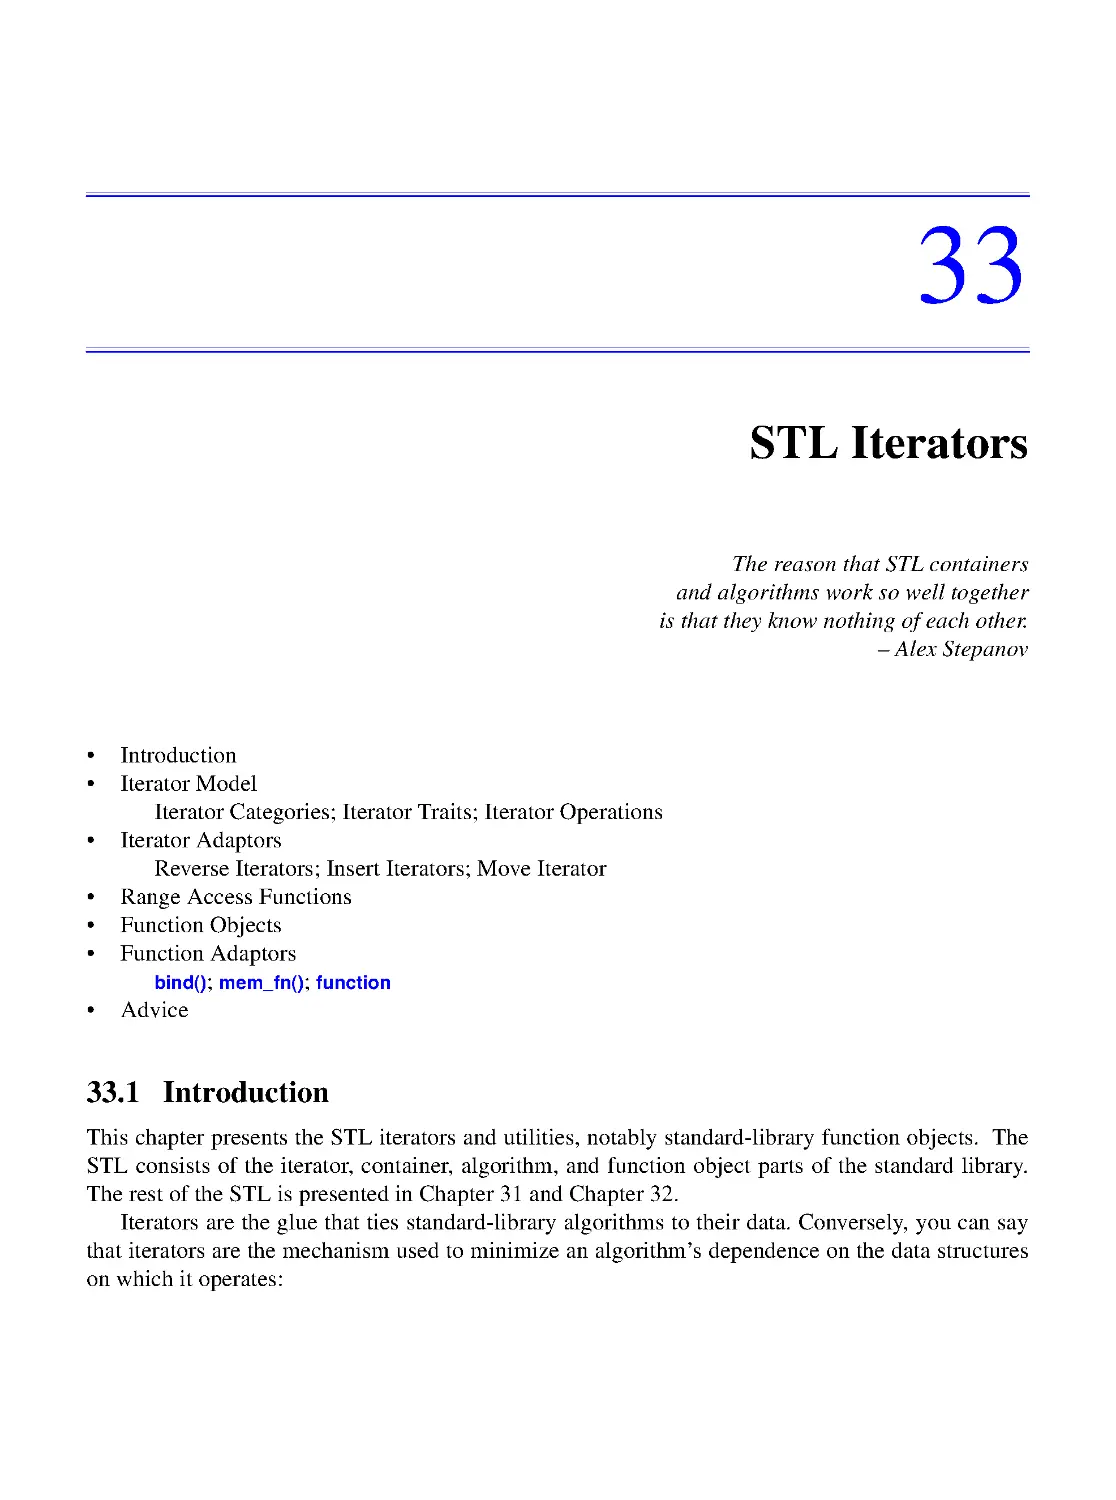 33. STL Iterators